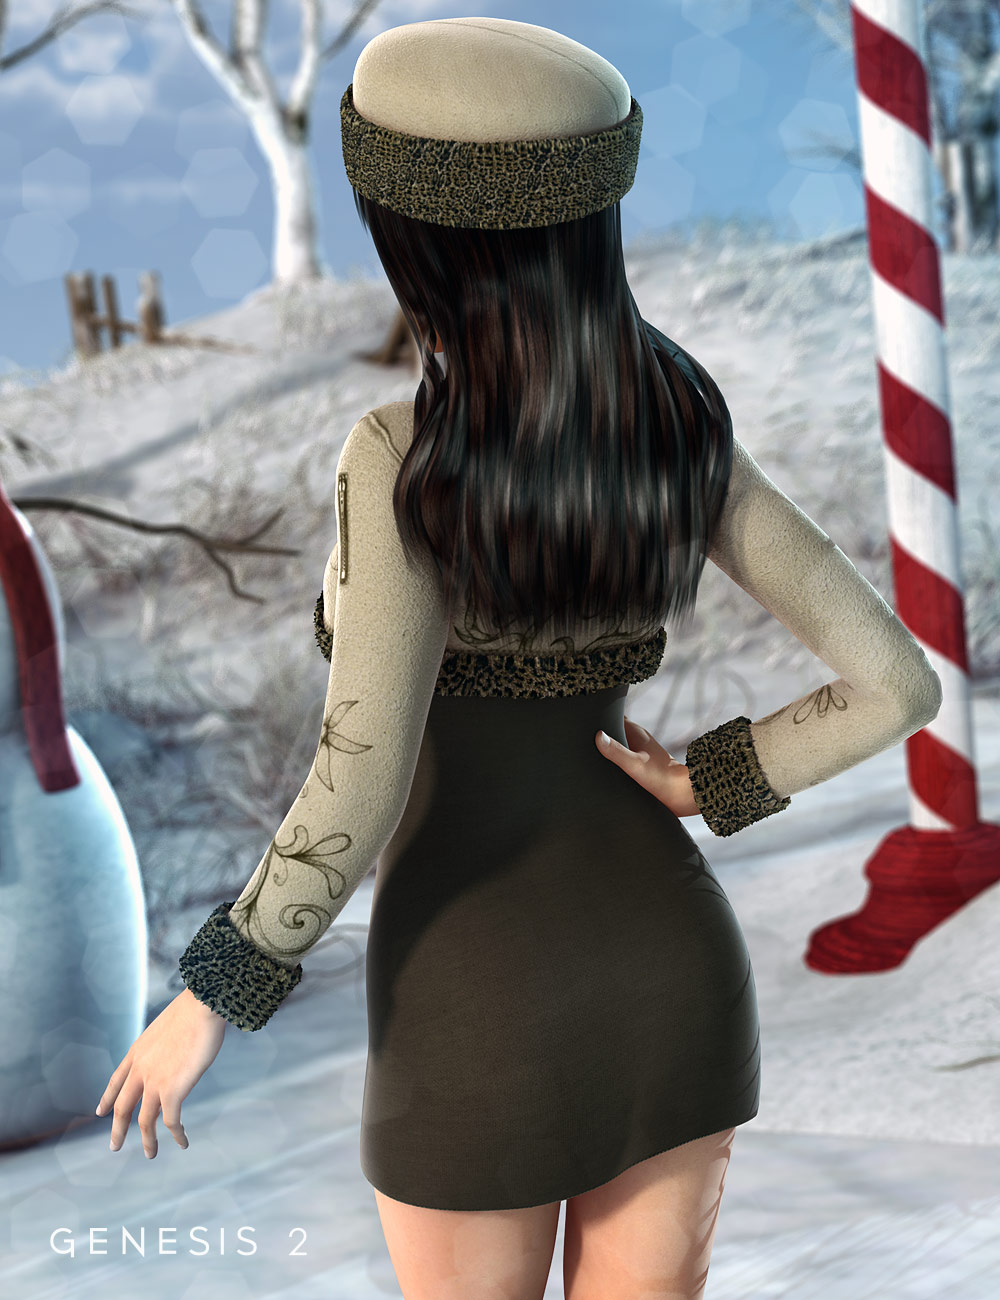 Frosty Dress for Genesis 2 Female(s) by: Shox-DesignKarth, 3D Models by Daz 3D